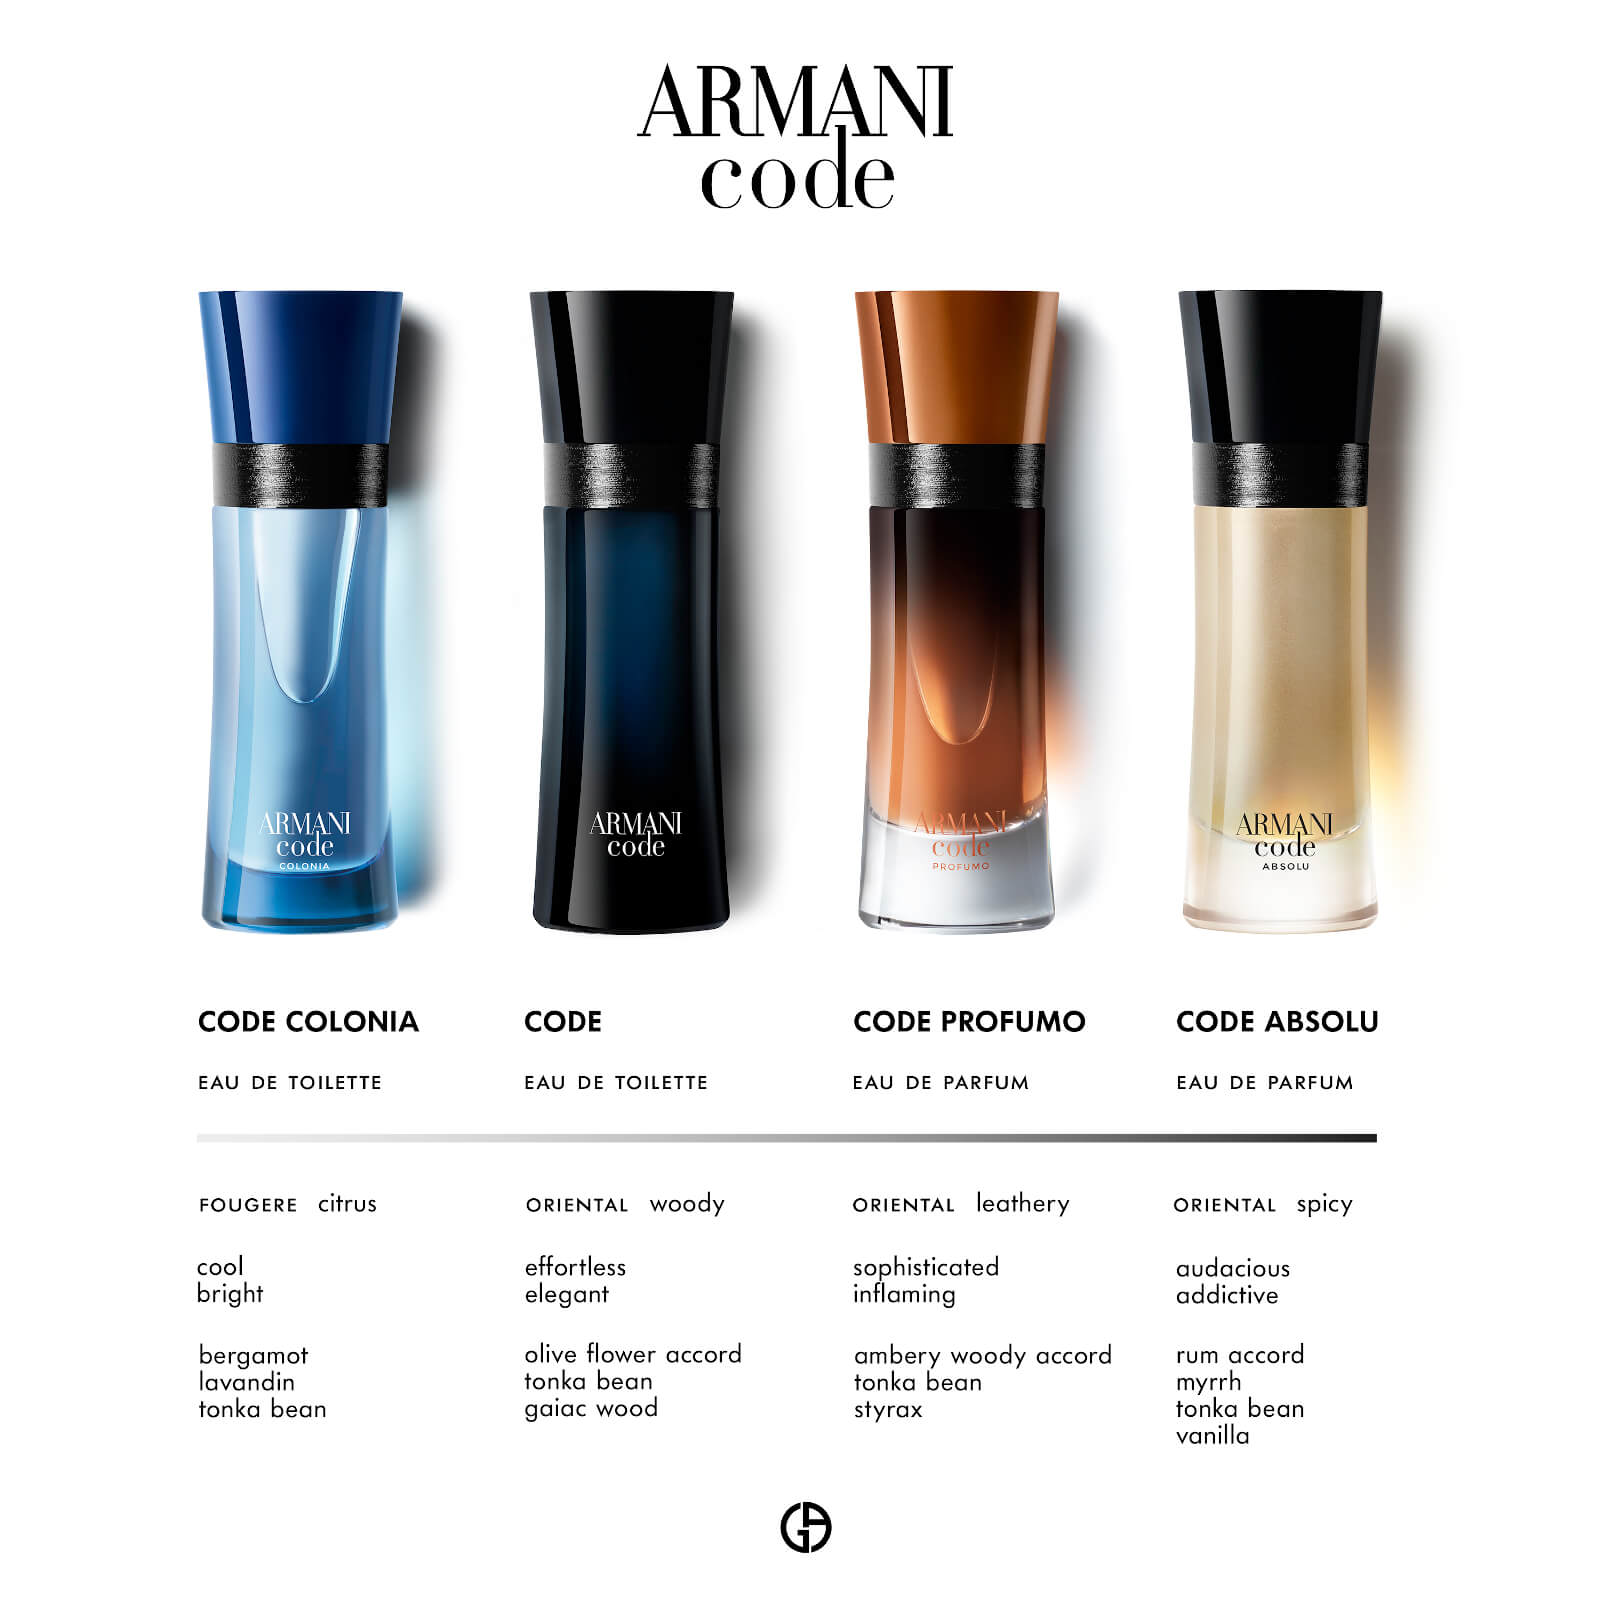 Armani perfume codes and scents